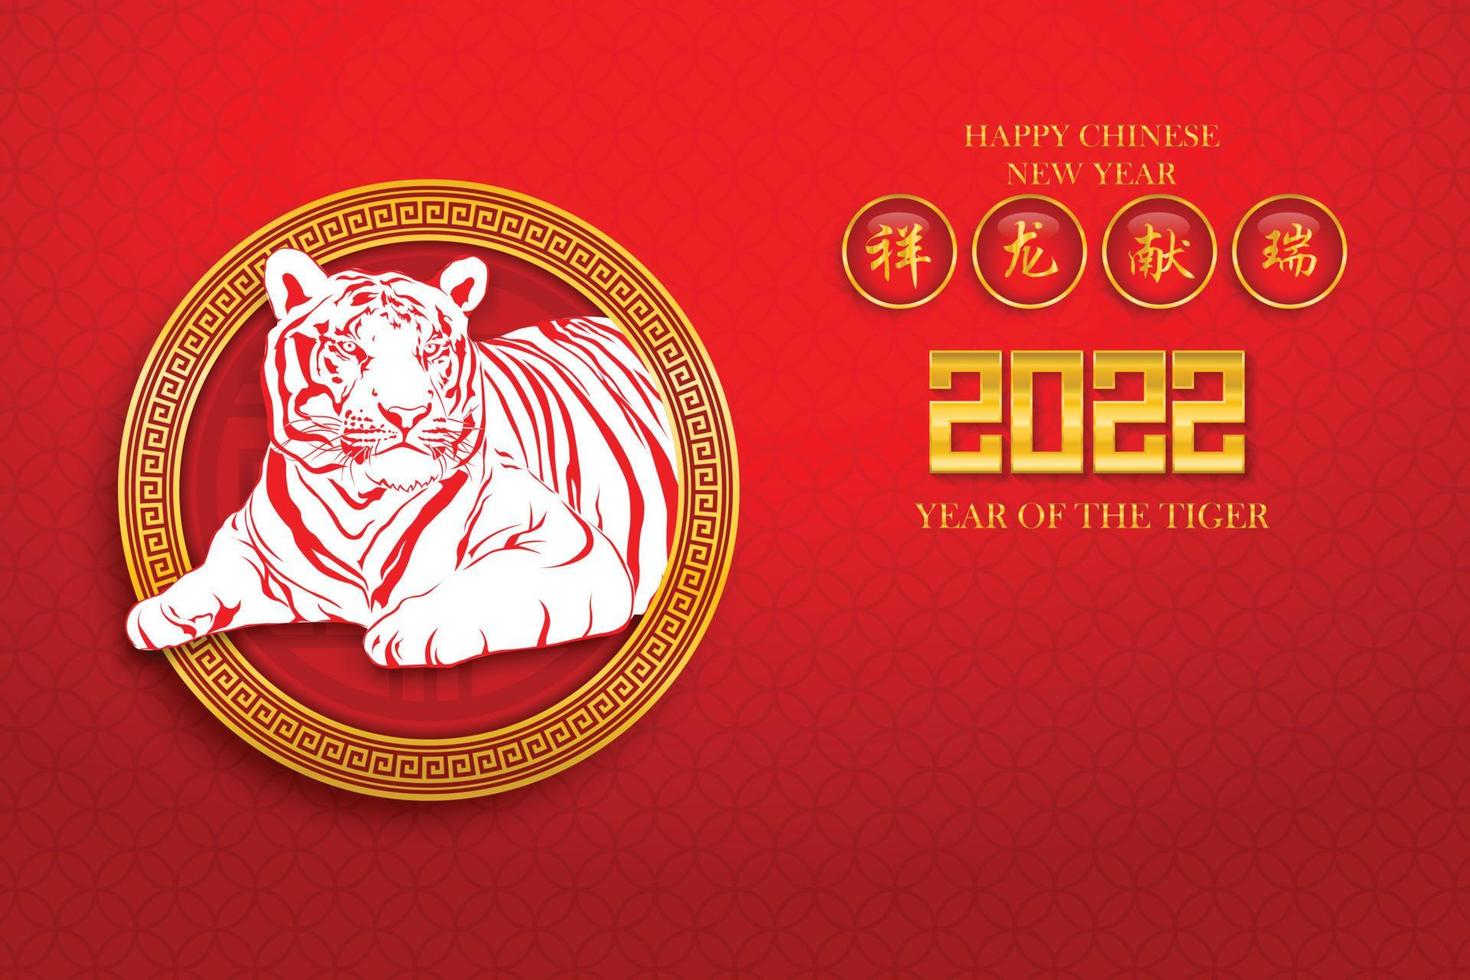 año nuevo chino 2022, año del tigre con dibujo de tigre rojo para 2022 en el marco del círculo del patrón chino sobre fondo rojo. traducción de texto chino calendario chino para tigre 2022 vector